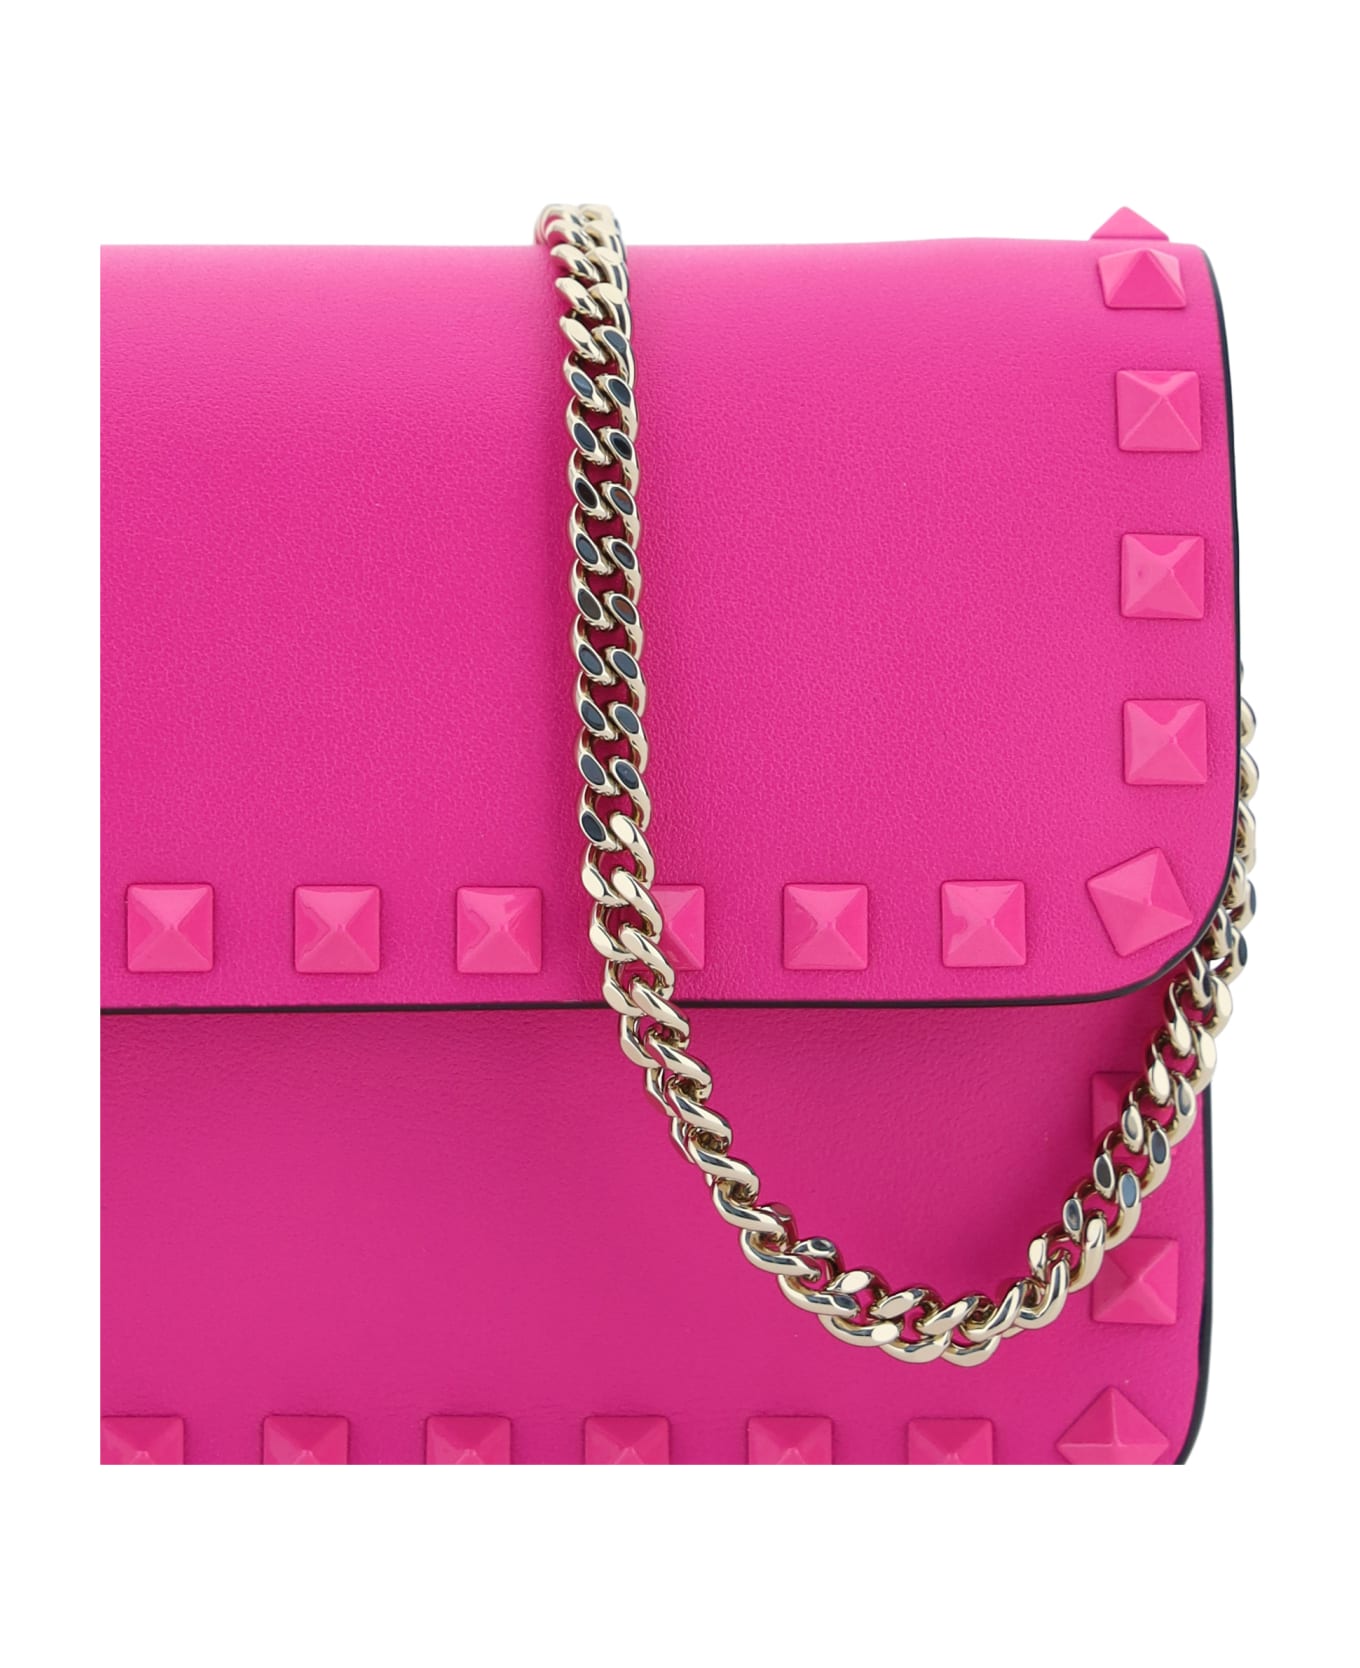 Valentino Garavani Rockstud Handbag - Pink Pp